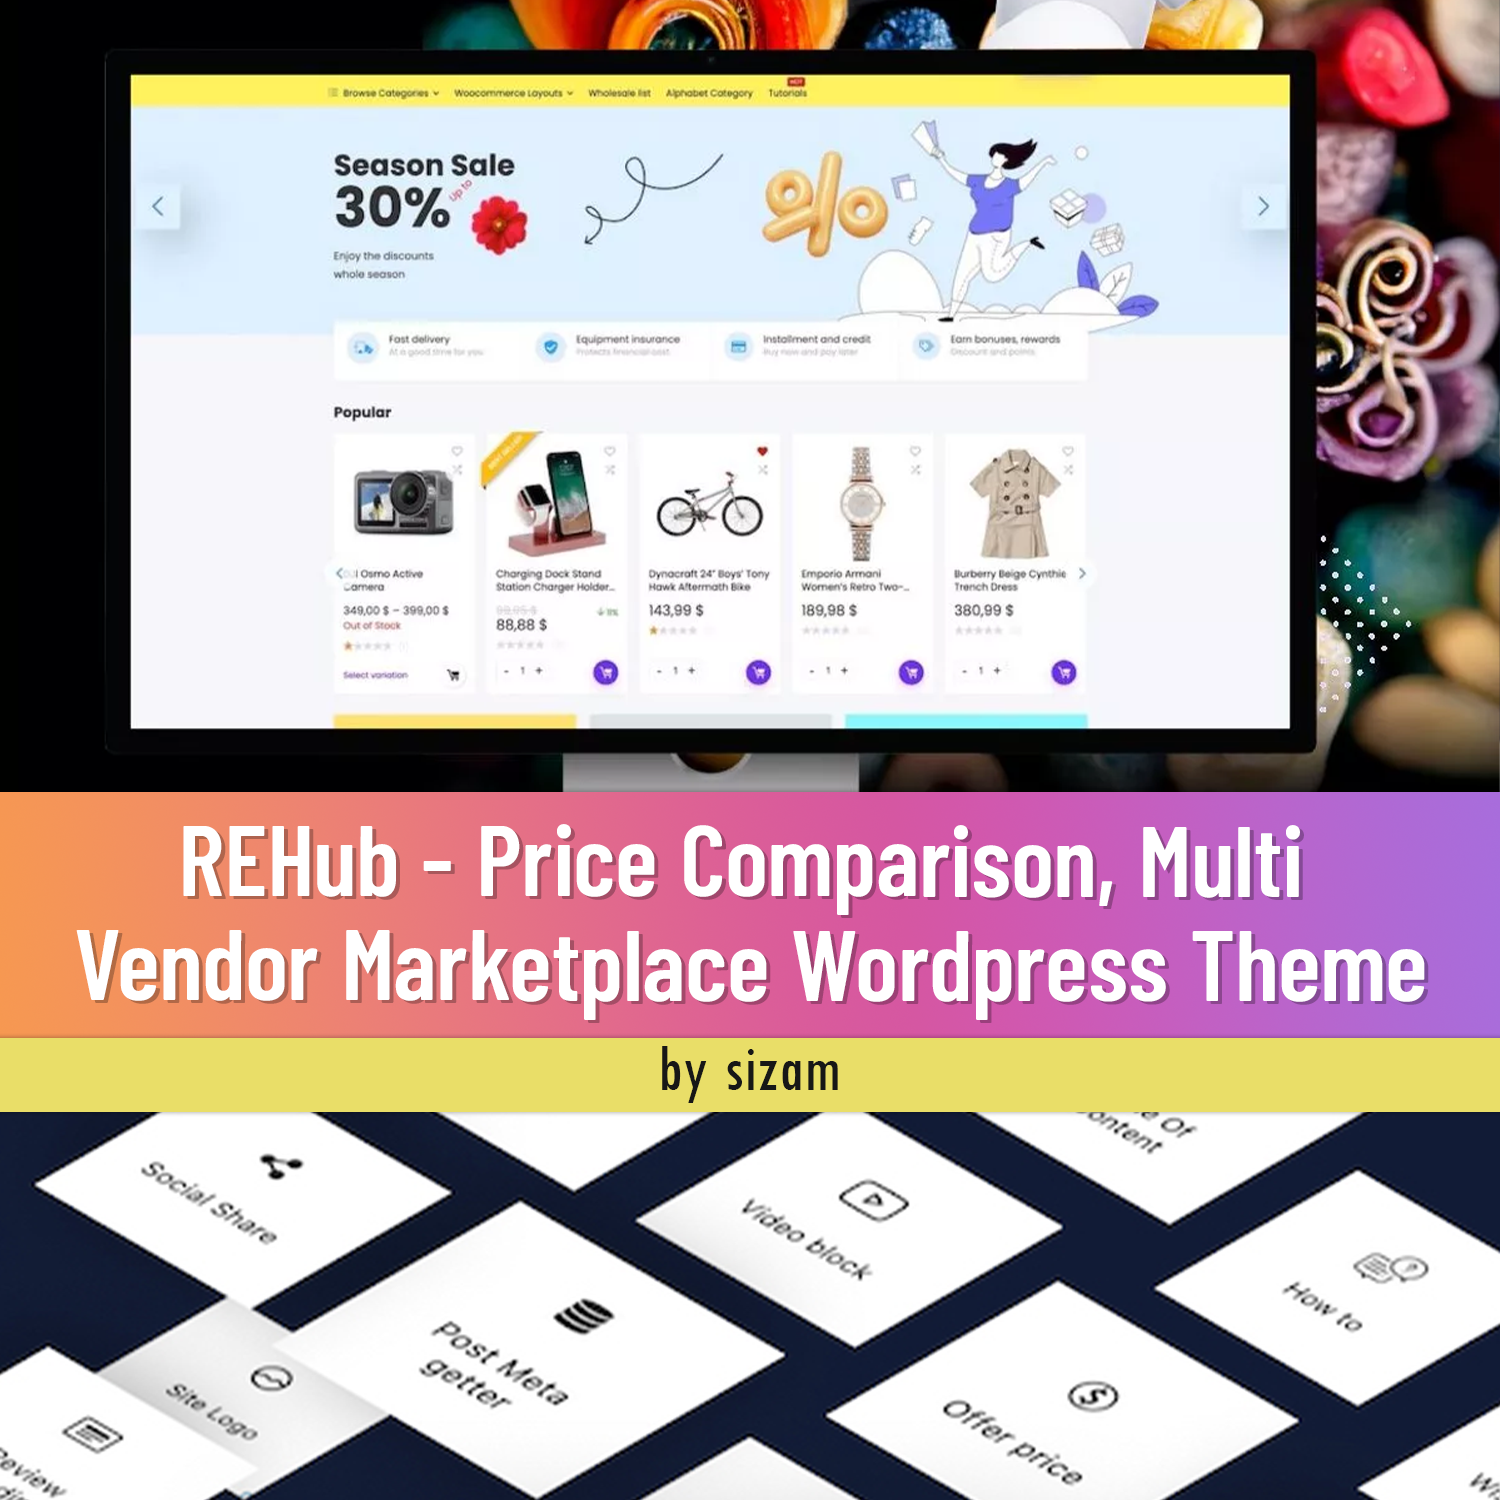 Preview rehub price comparison multi vendor marketplace wordpress theme.